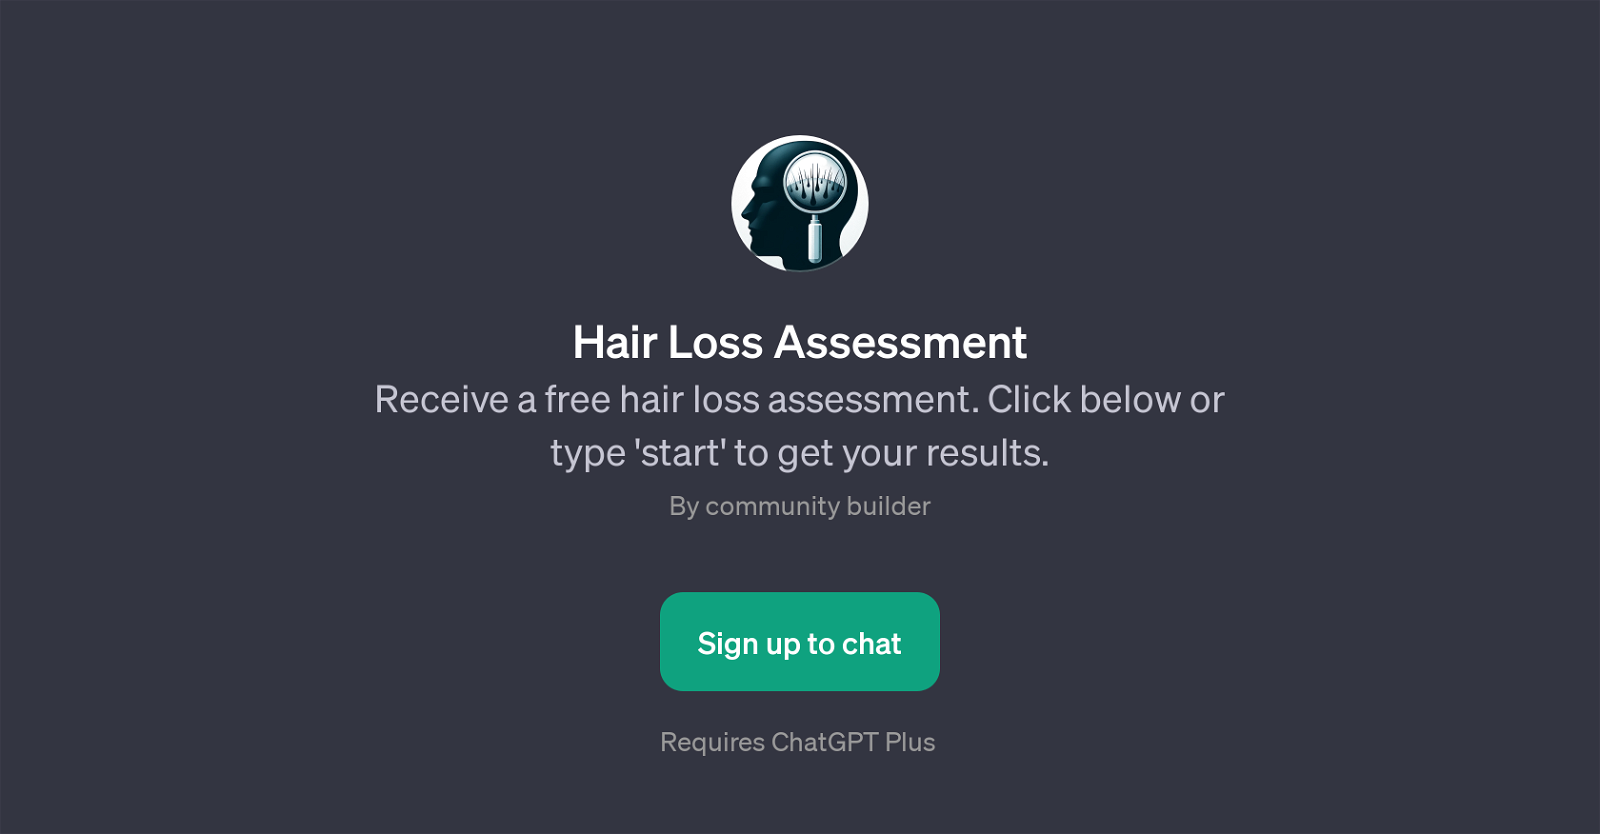 Hair Loss Assessment website